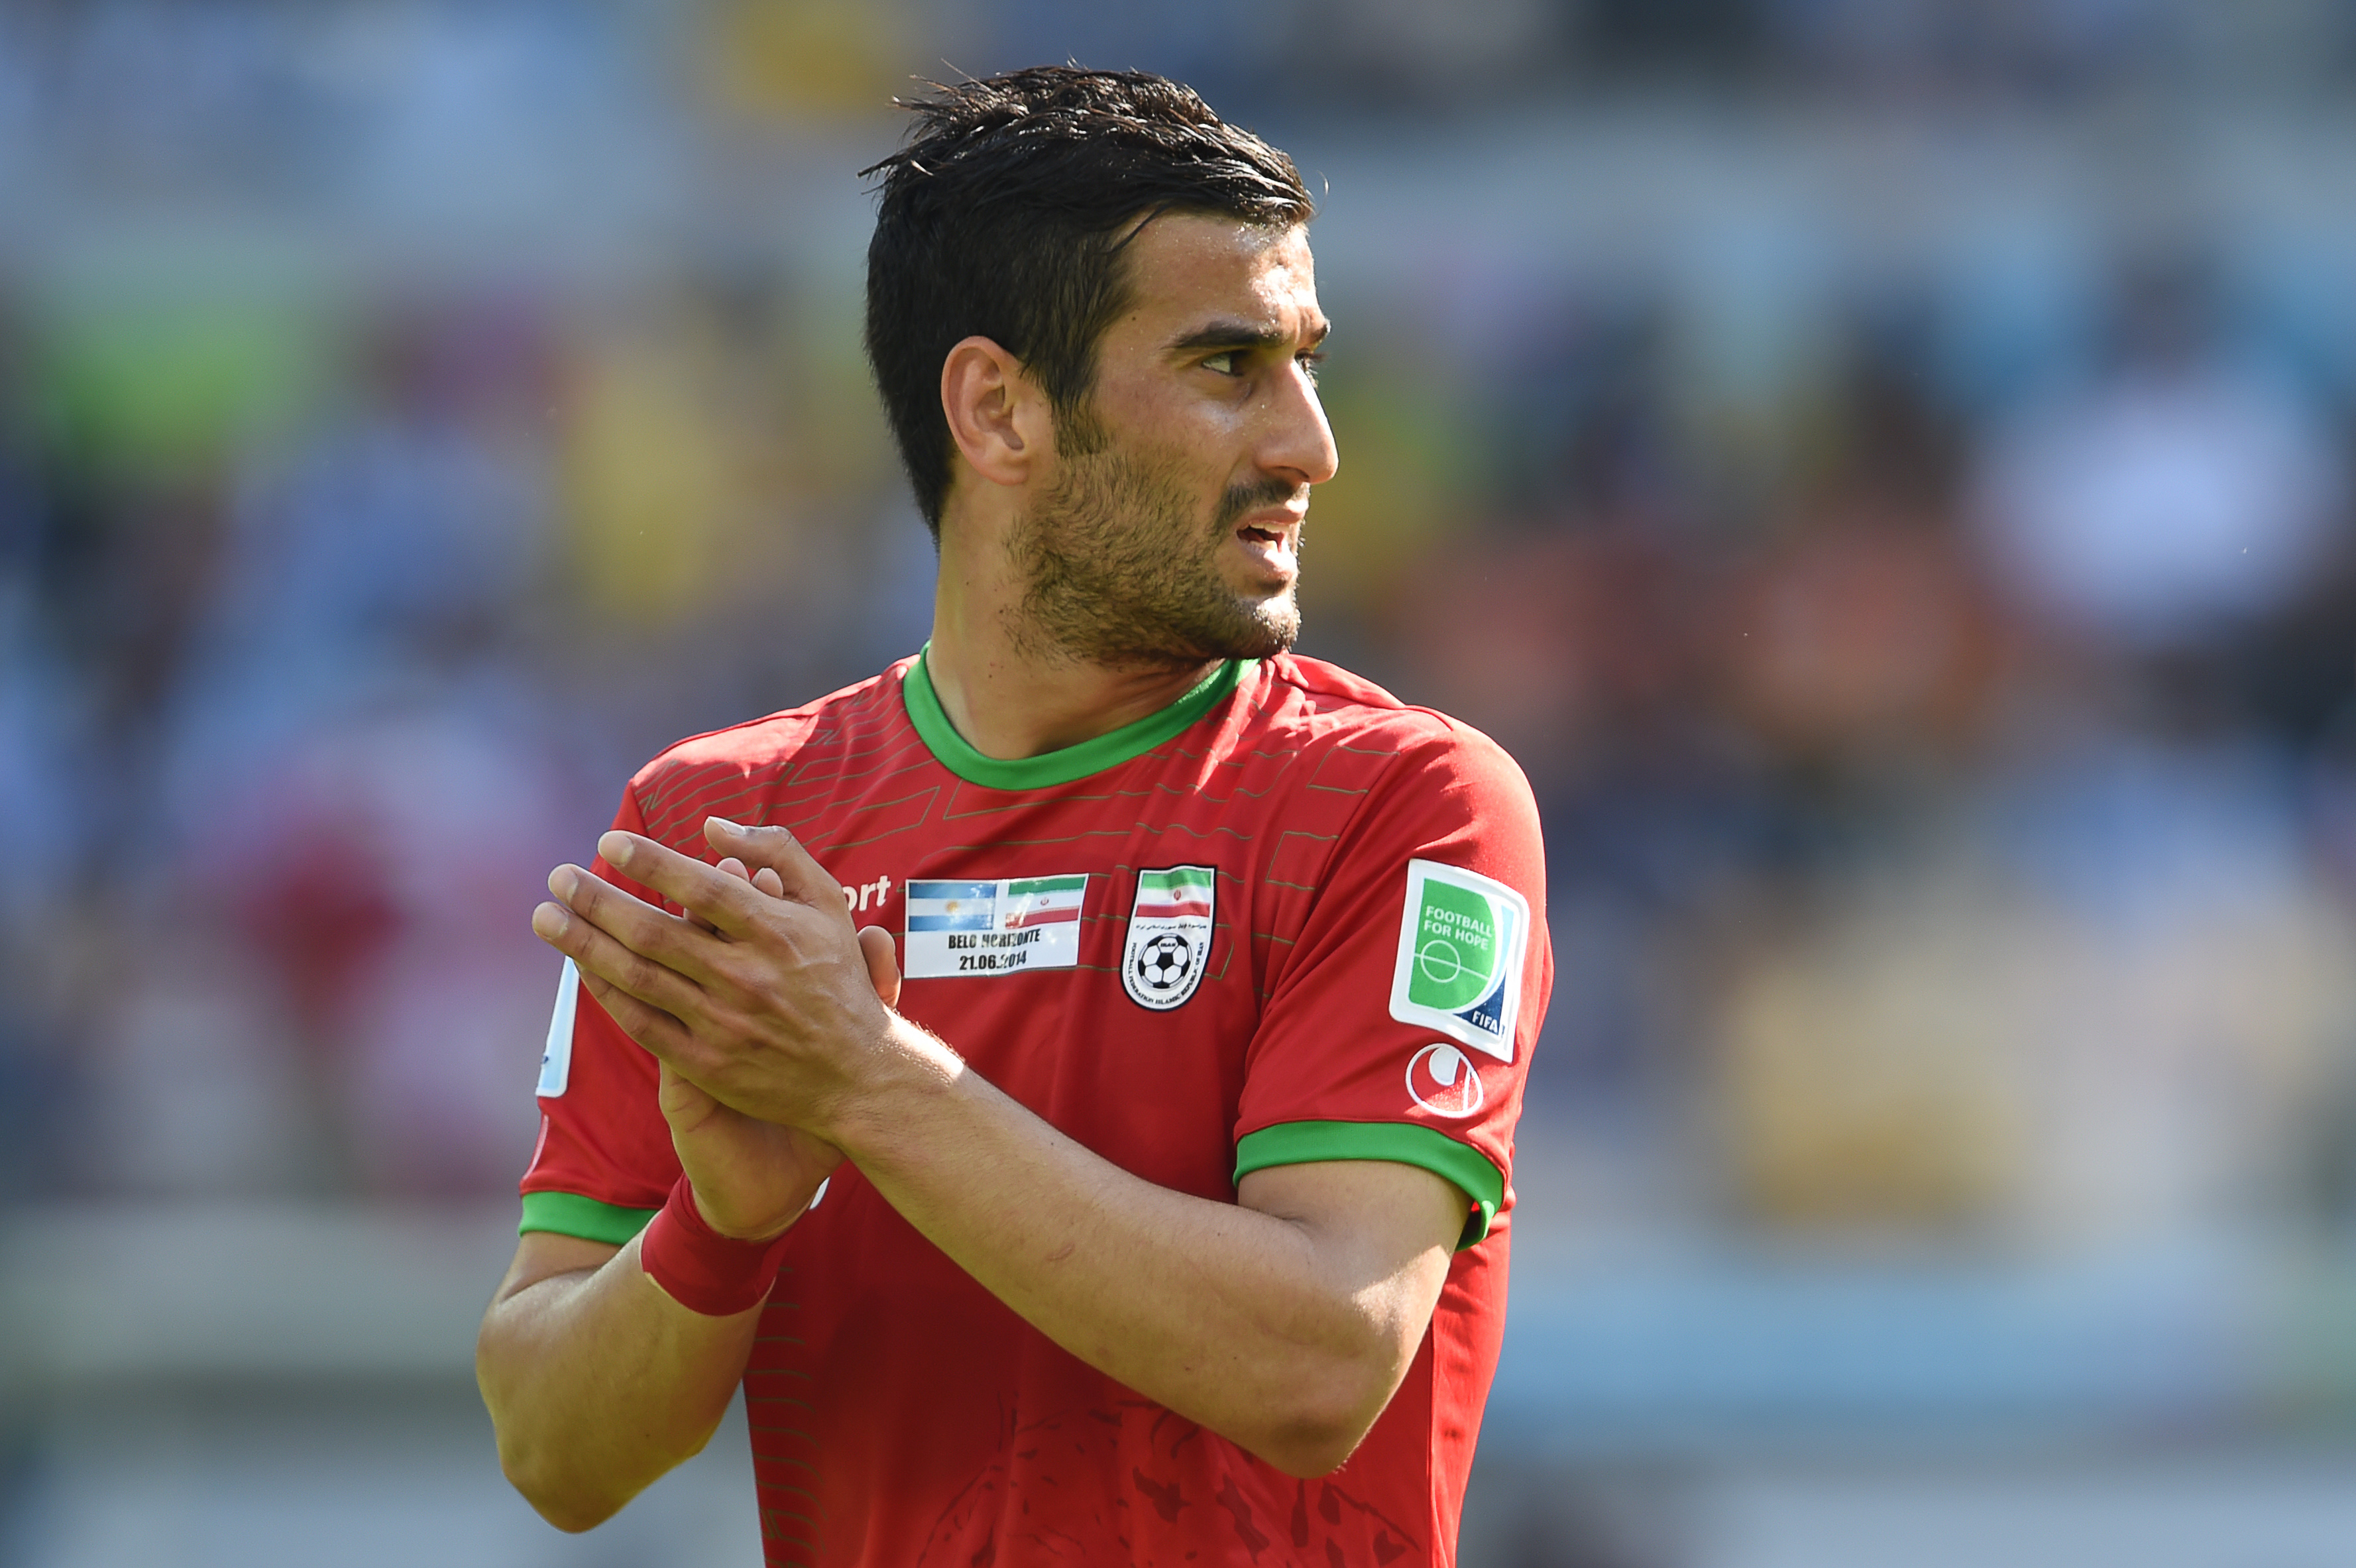 Két kulcsjátékost kizártak az iráni futballválogatottból, mert a görög klubjukban pályára mertek lépni egy izraeli csapat ellen